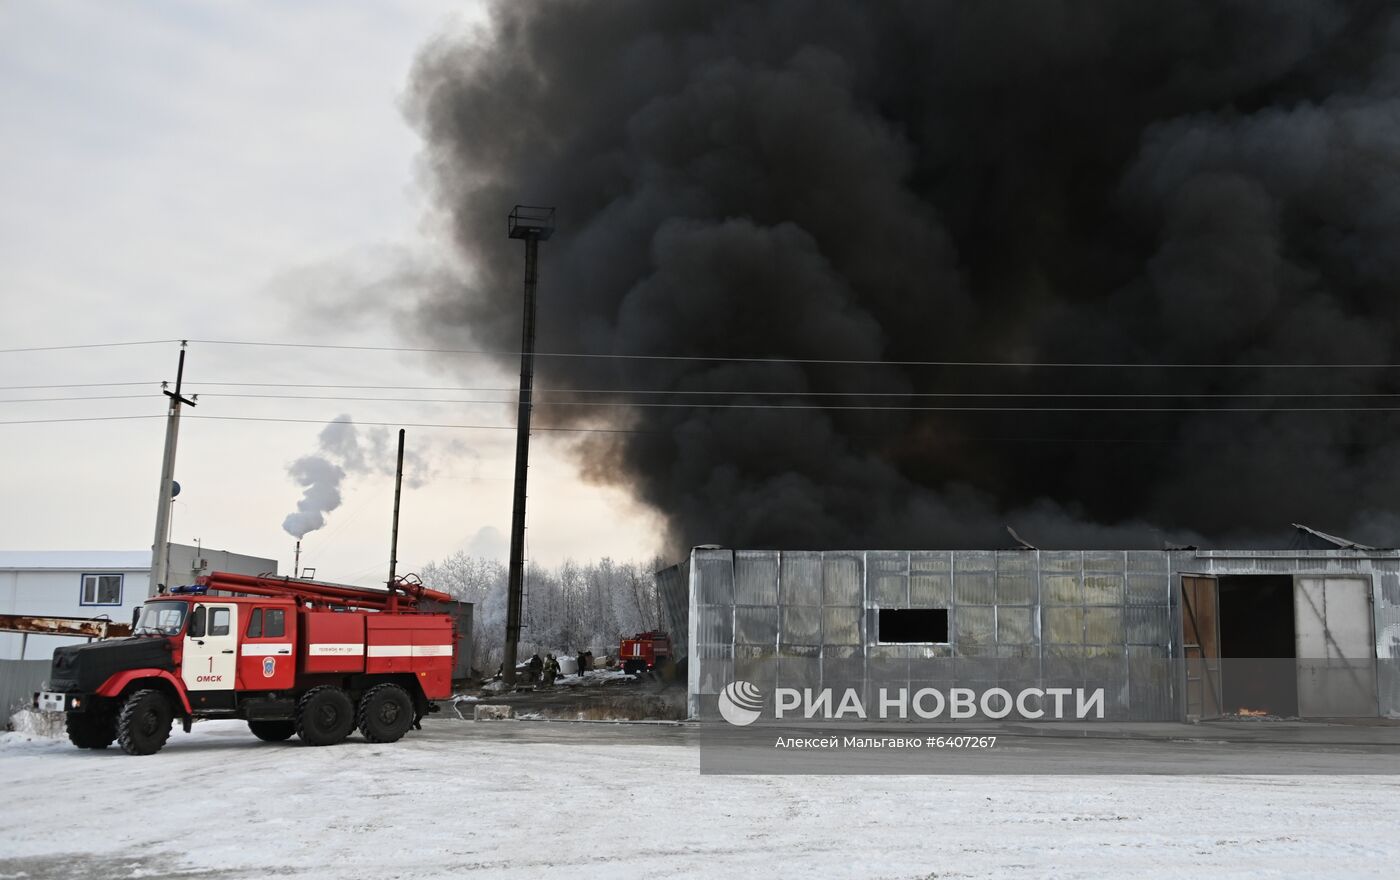 Пожар на складе с пластиком в Омске